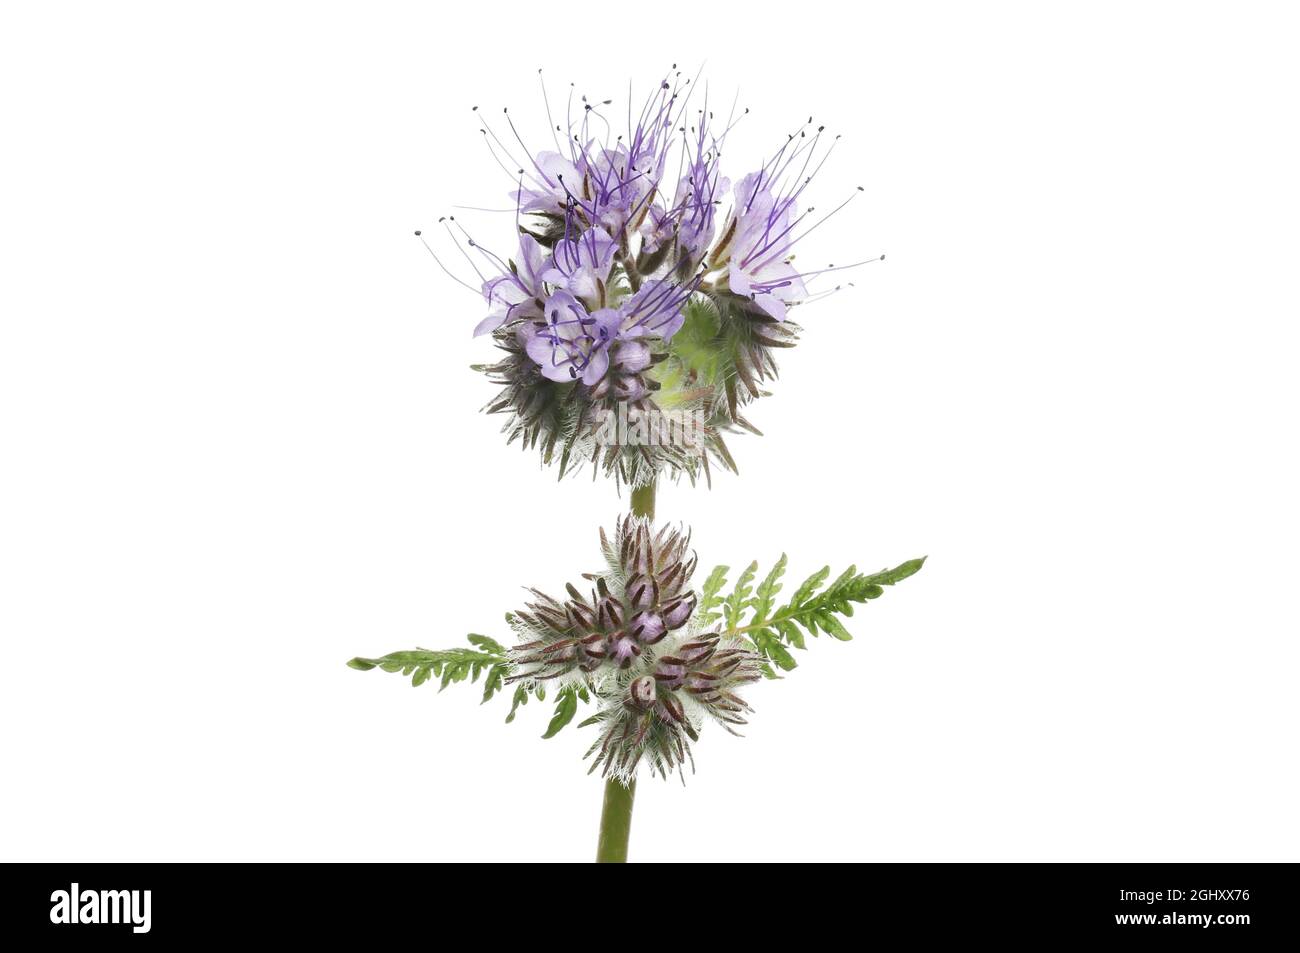 Les fleurs et le feuillage de Phacelia, une plante à fumier vert favorable au pollinisateur, isolée contre le blanc Banque D'Images